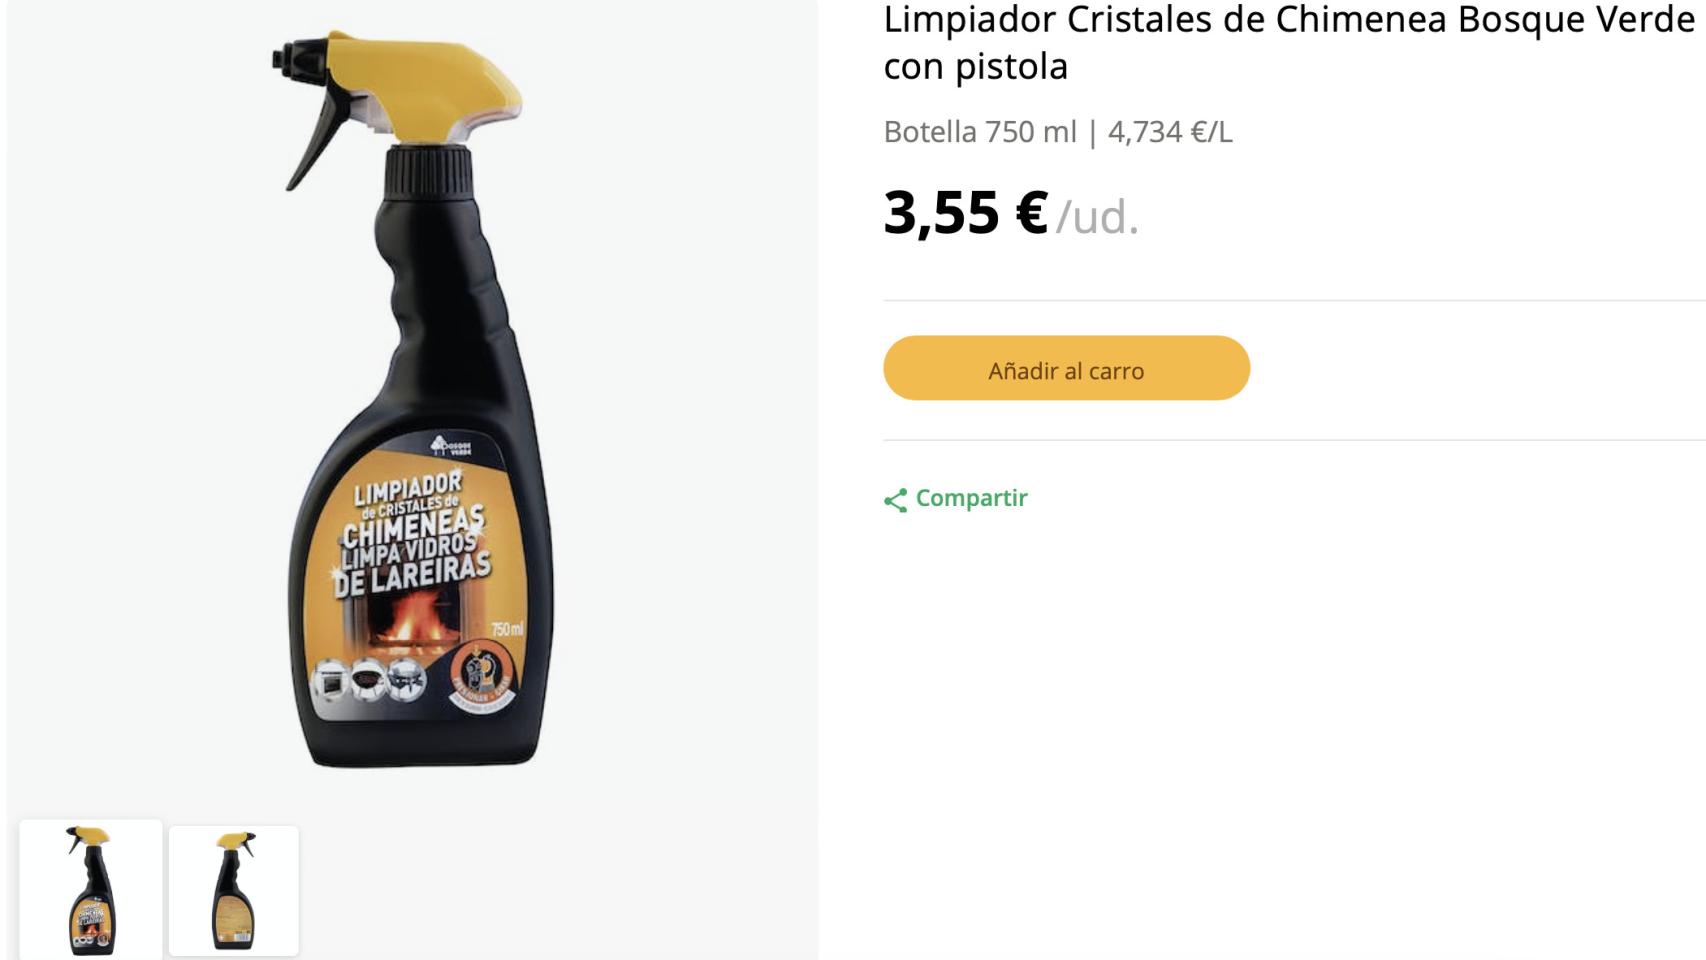 La sorprendente utilidad real del limpiachimeneas de Mercadona (y no, no es limpiar  chimeneas) - Diario Córdoba